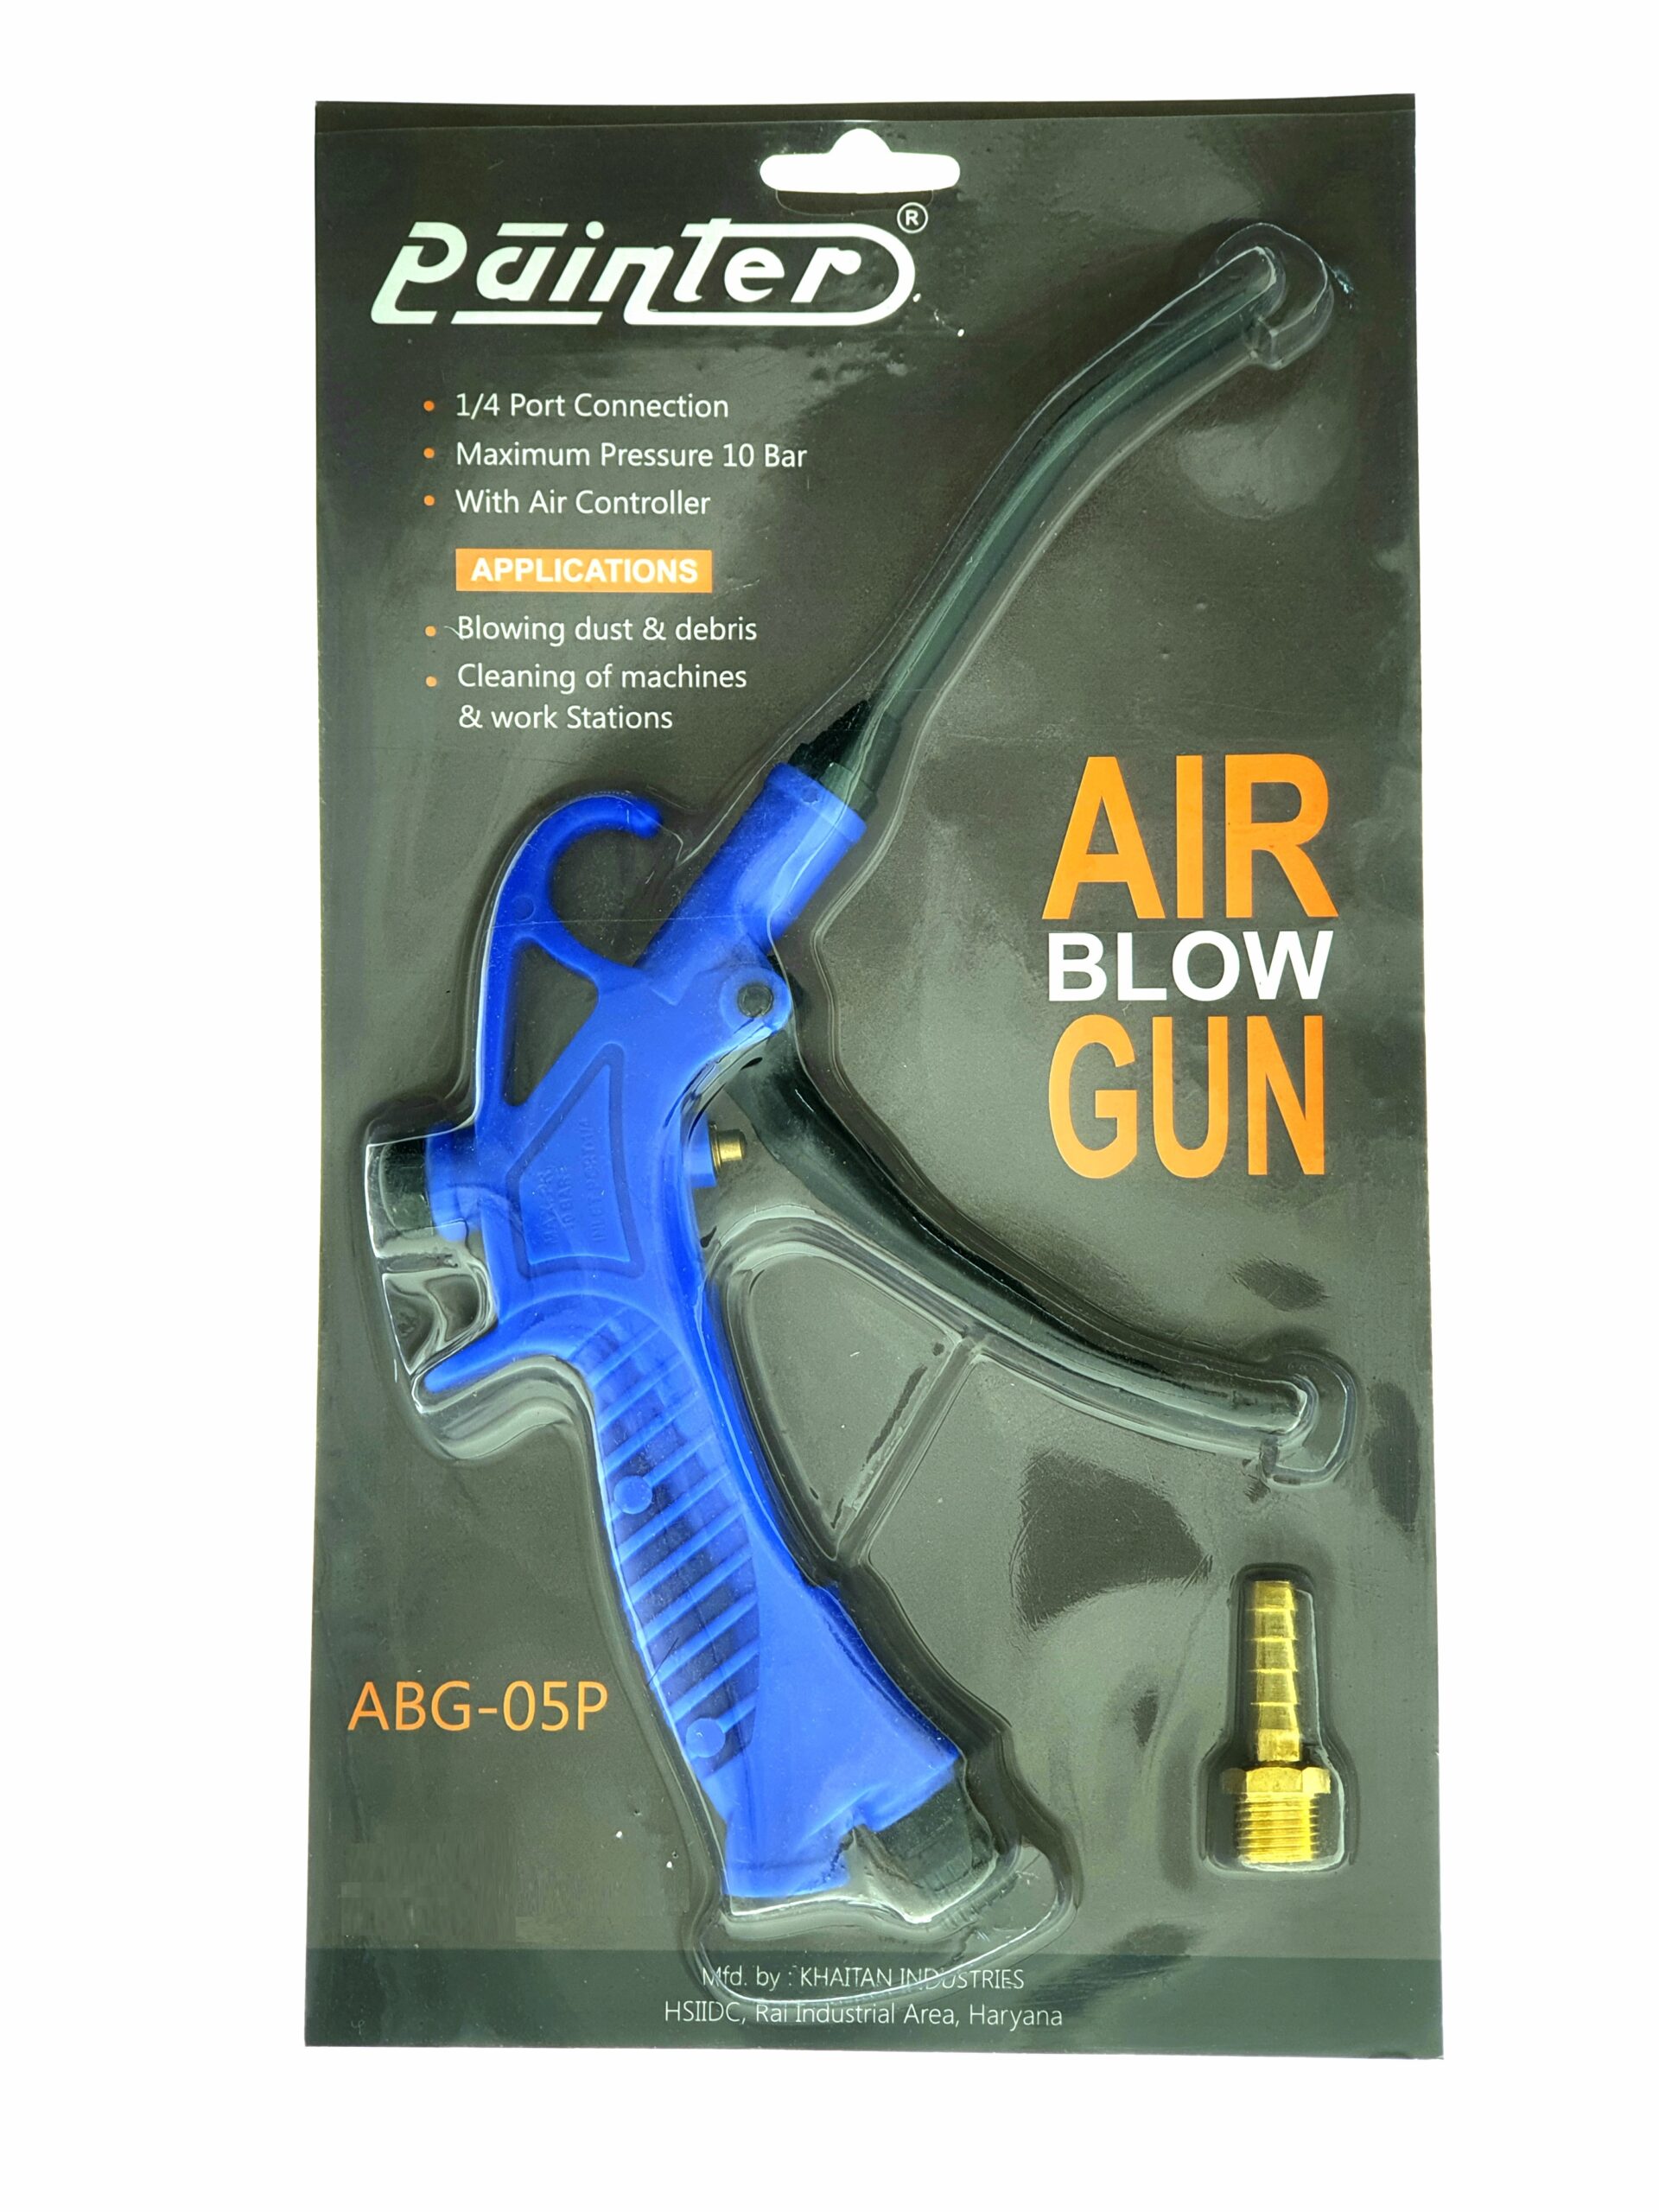 Plastic Air Blow Gun With air controller